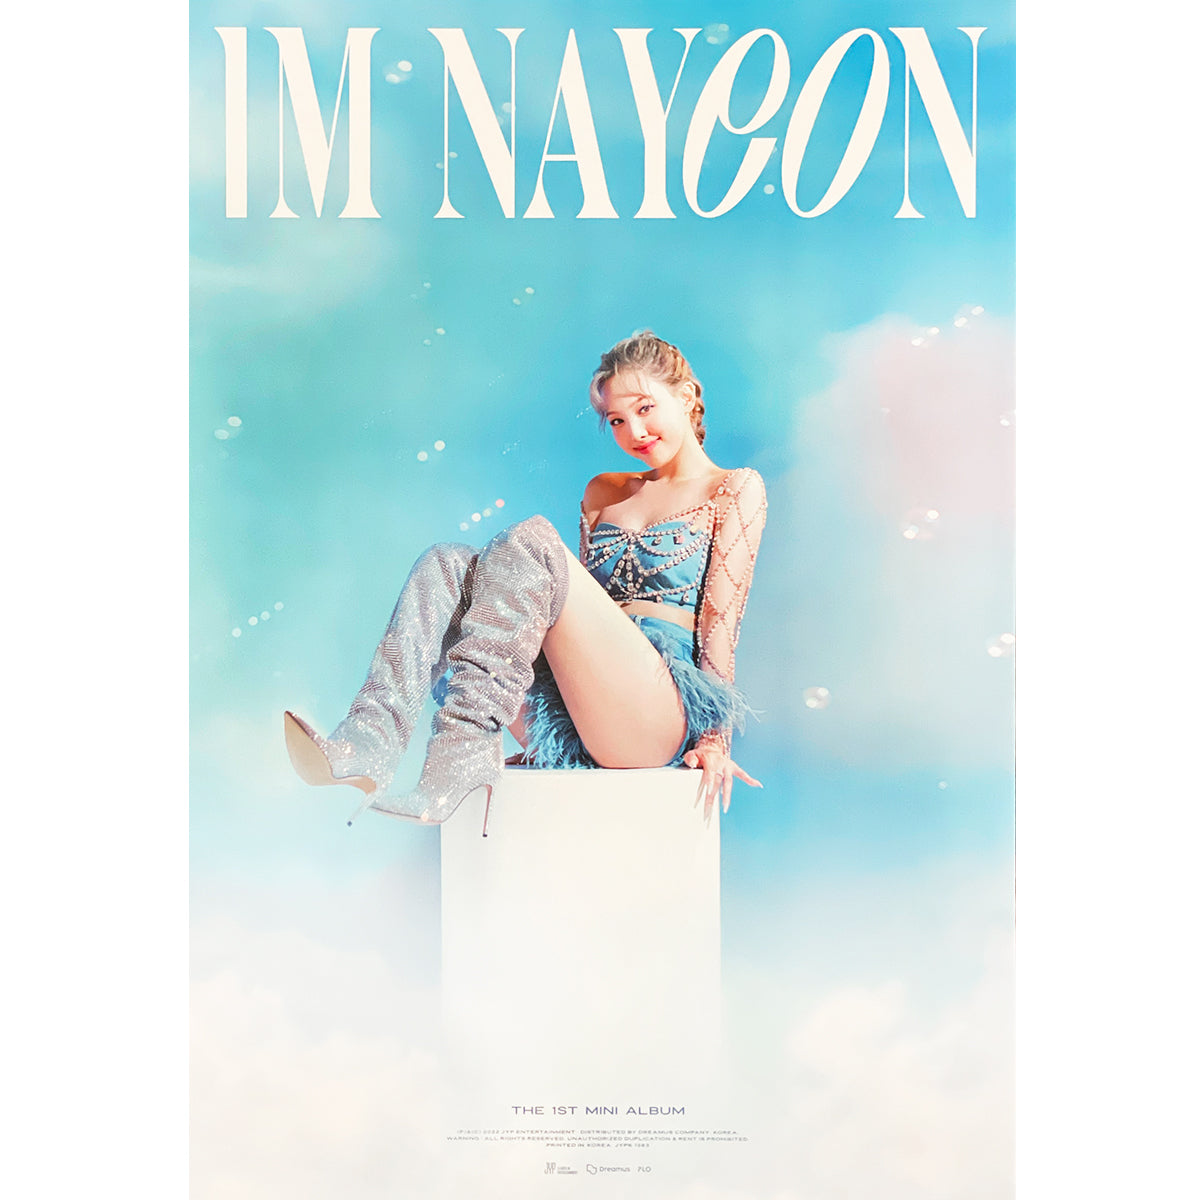 Twice Nayeon POP Im Nayeon Kpop Photocard Stickers 